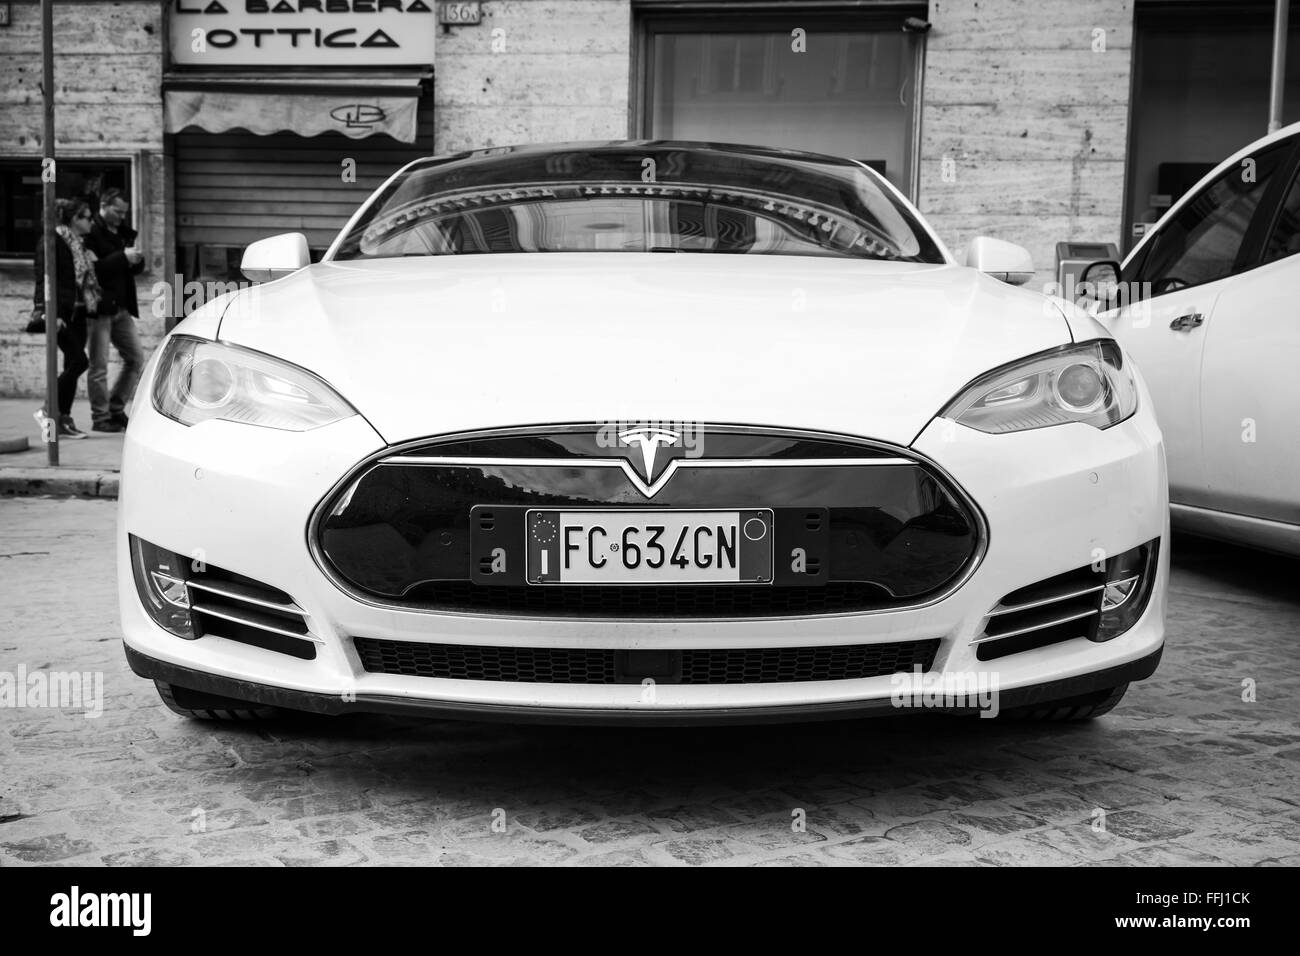 Rome, Italie - Février 13, 2016 : Blanc Tesla Model S voiture garée sur la route urbaine à Rome, vue de face, en noir et blanc gros plan Banque D'Images